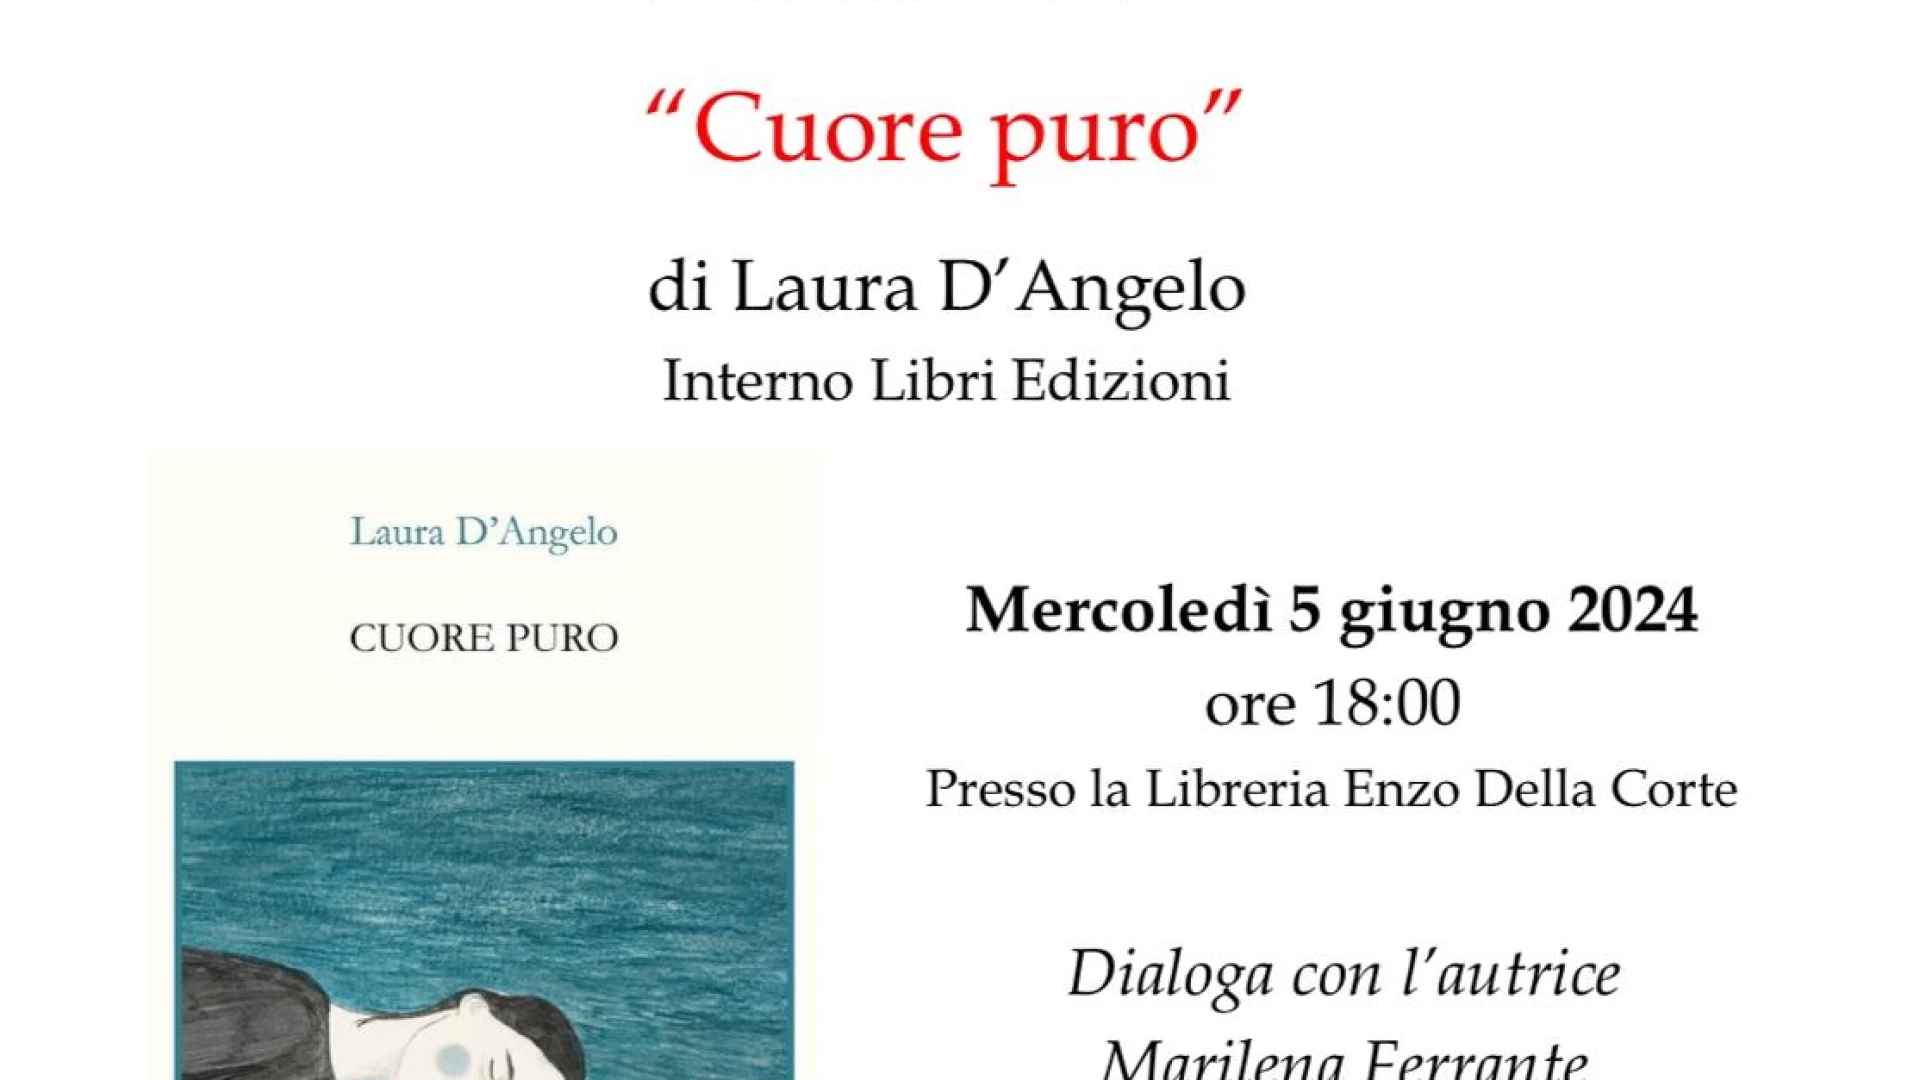 Presentazione del libro “Cuore puro” di Laura D’Angelo. Mercoledi' 5 giugno presso la libreria Enzo dell Corte ad Isernia.